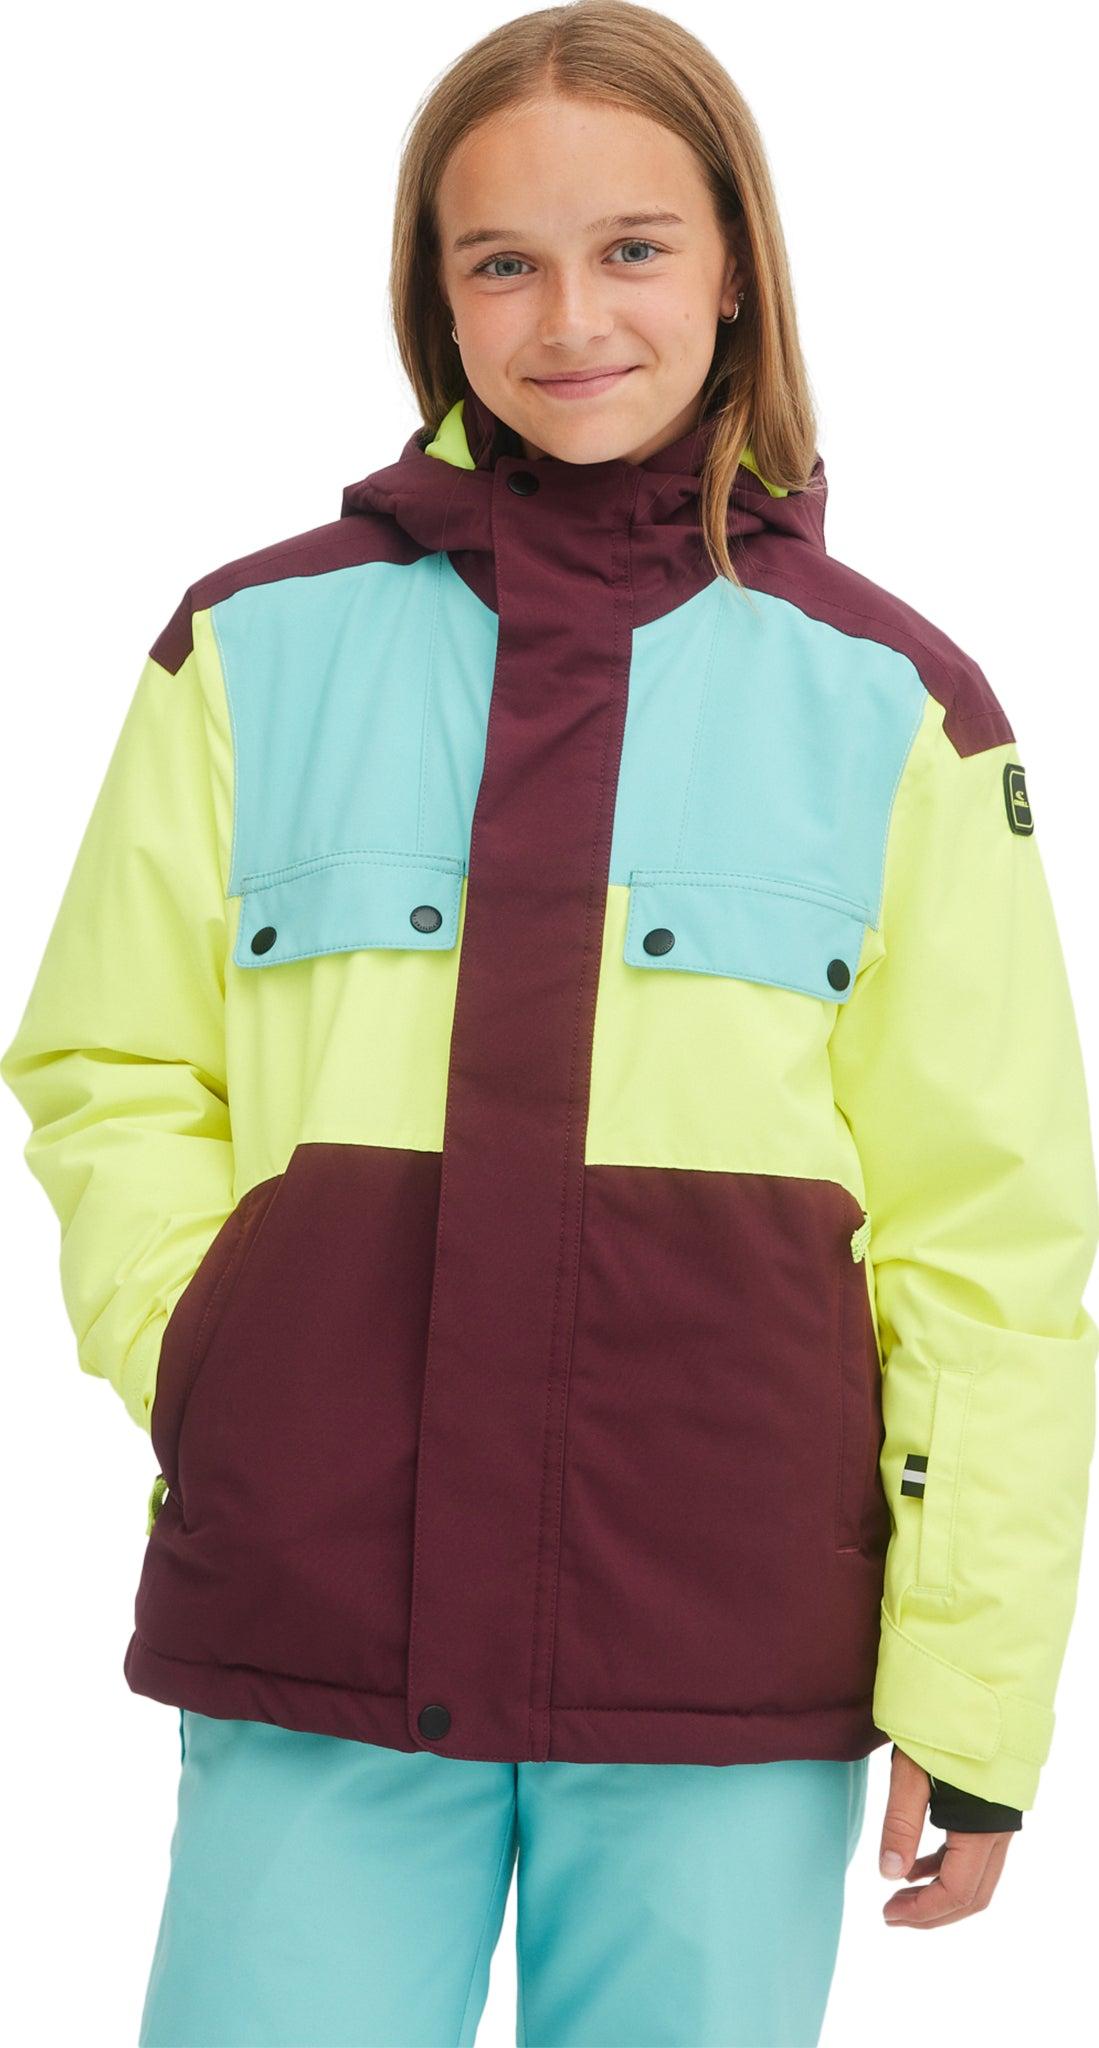 Selected image for O’NEILL Ski jakna za devojčice, Tanzanite Jacket, Šarena